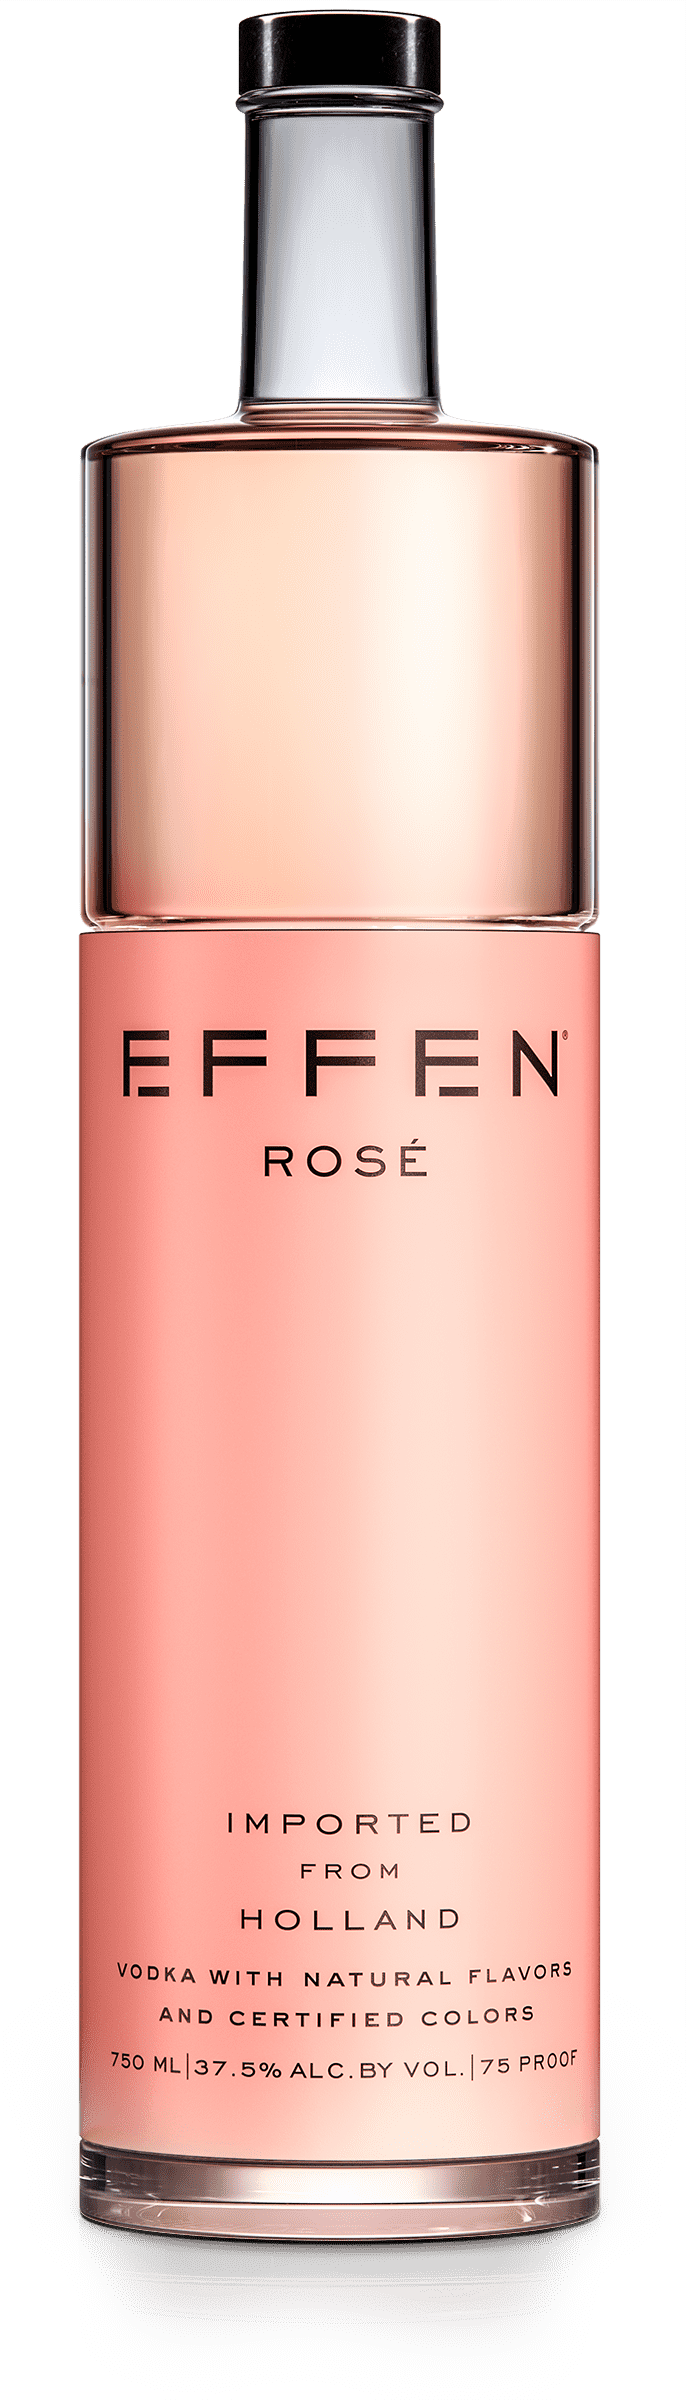 EFFEN Rose Vodka bottle shot